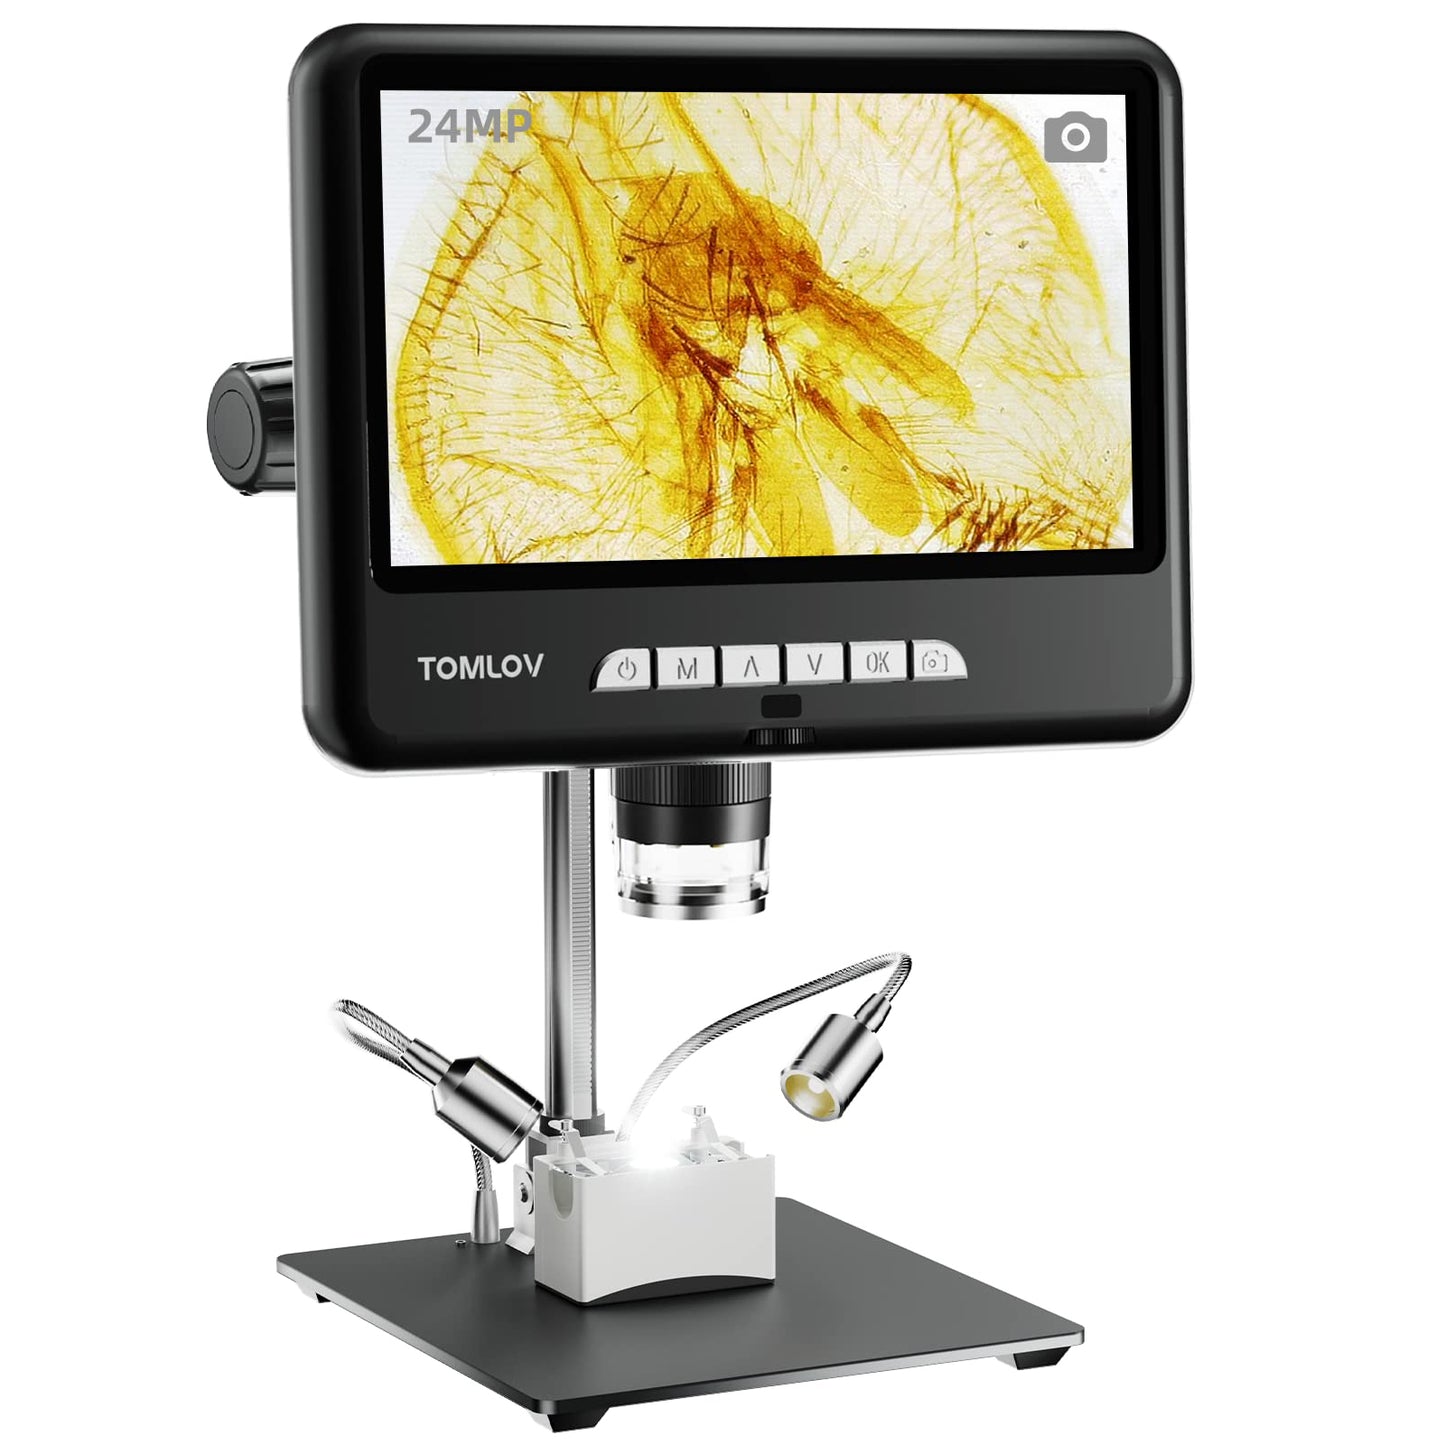 TOMLOV DM401 Pro Microscope 2K HDMI Digital Microscope